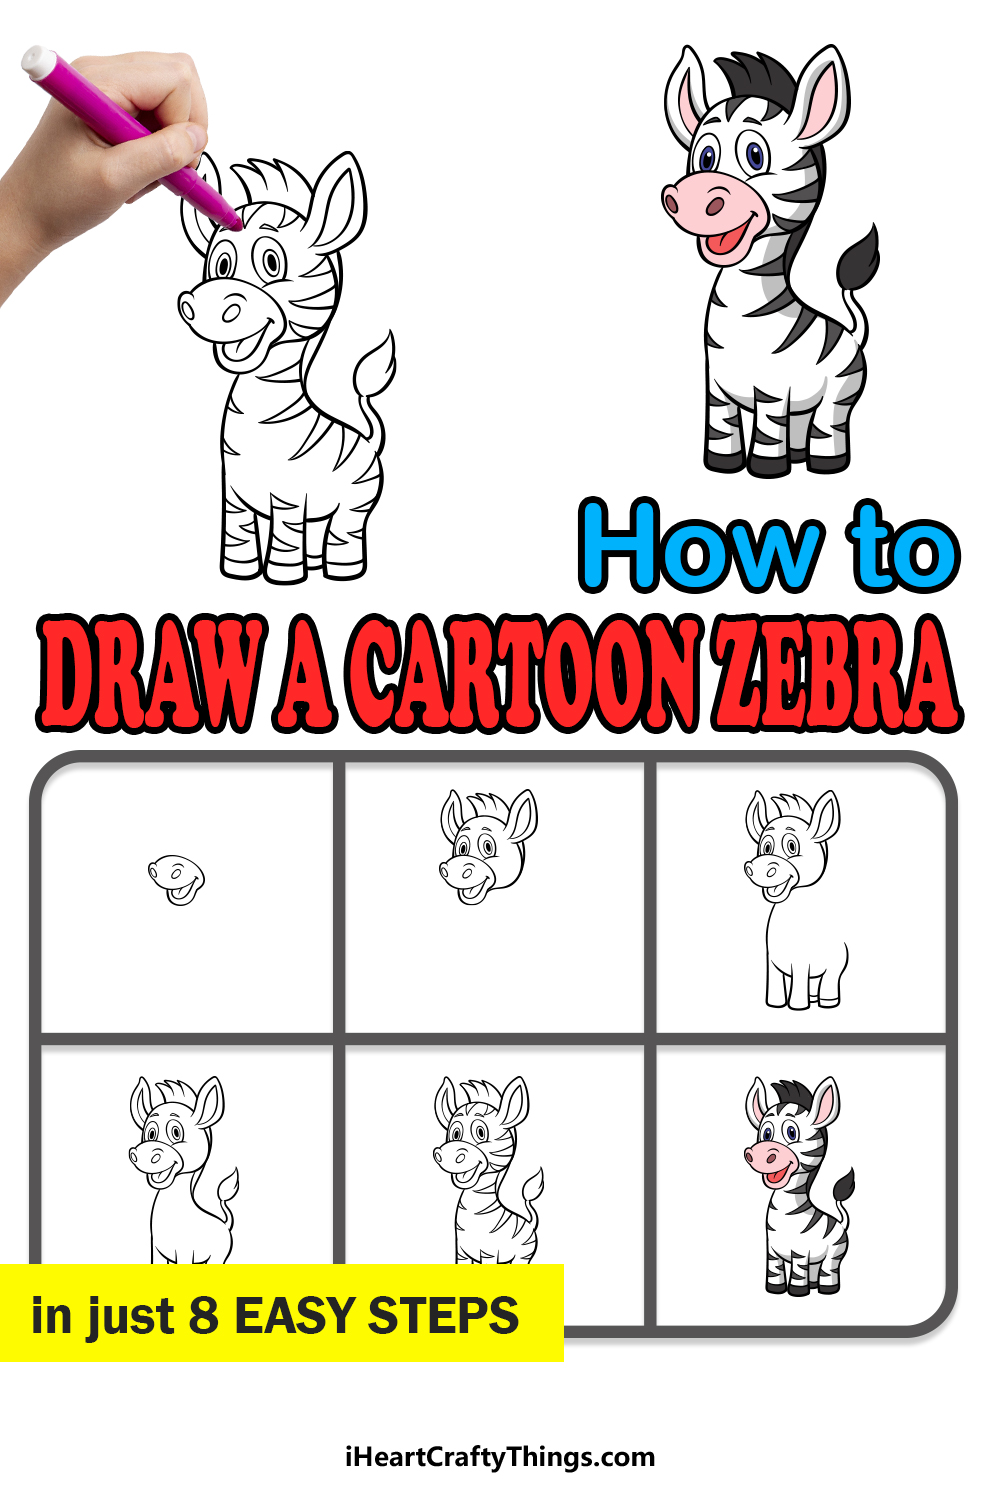 how to draw a cartoon zebra in 8 easy steps